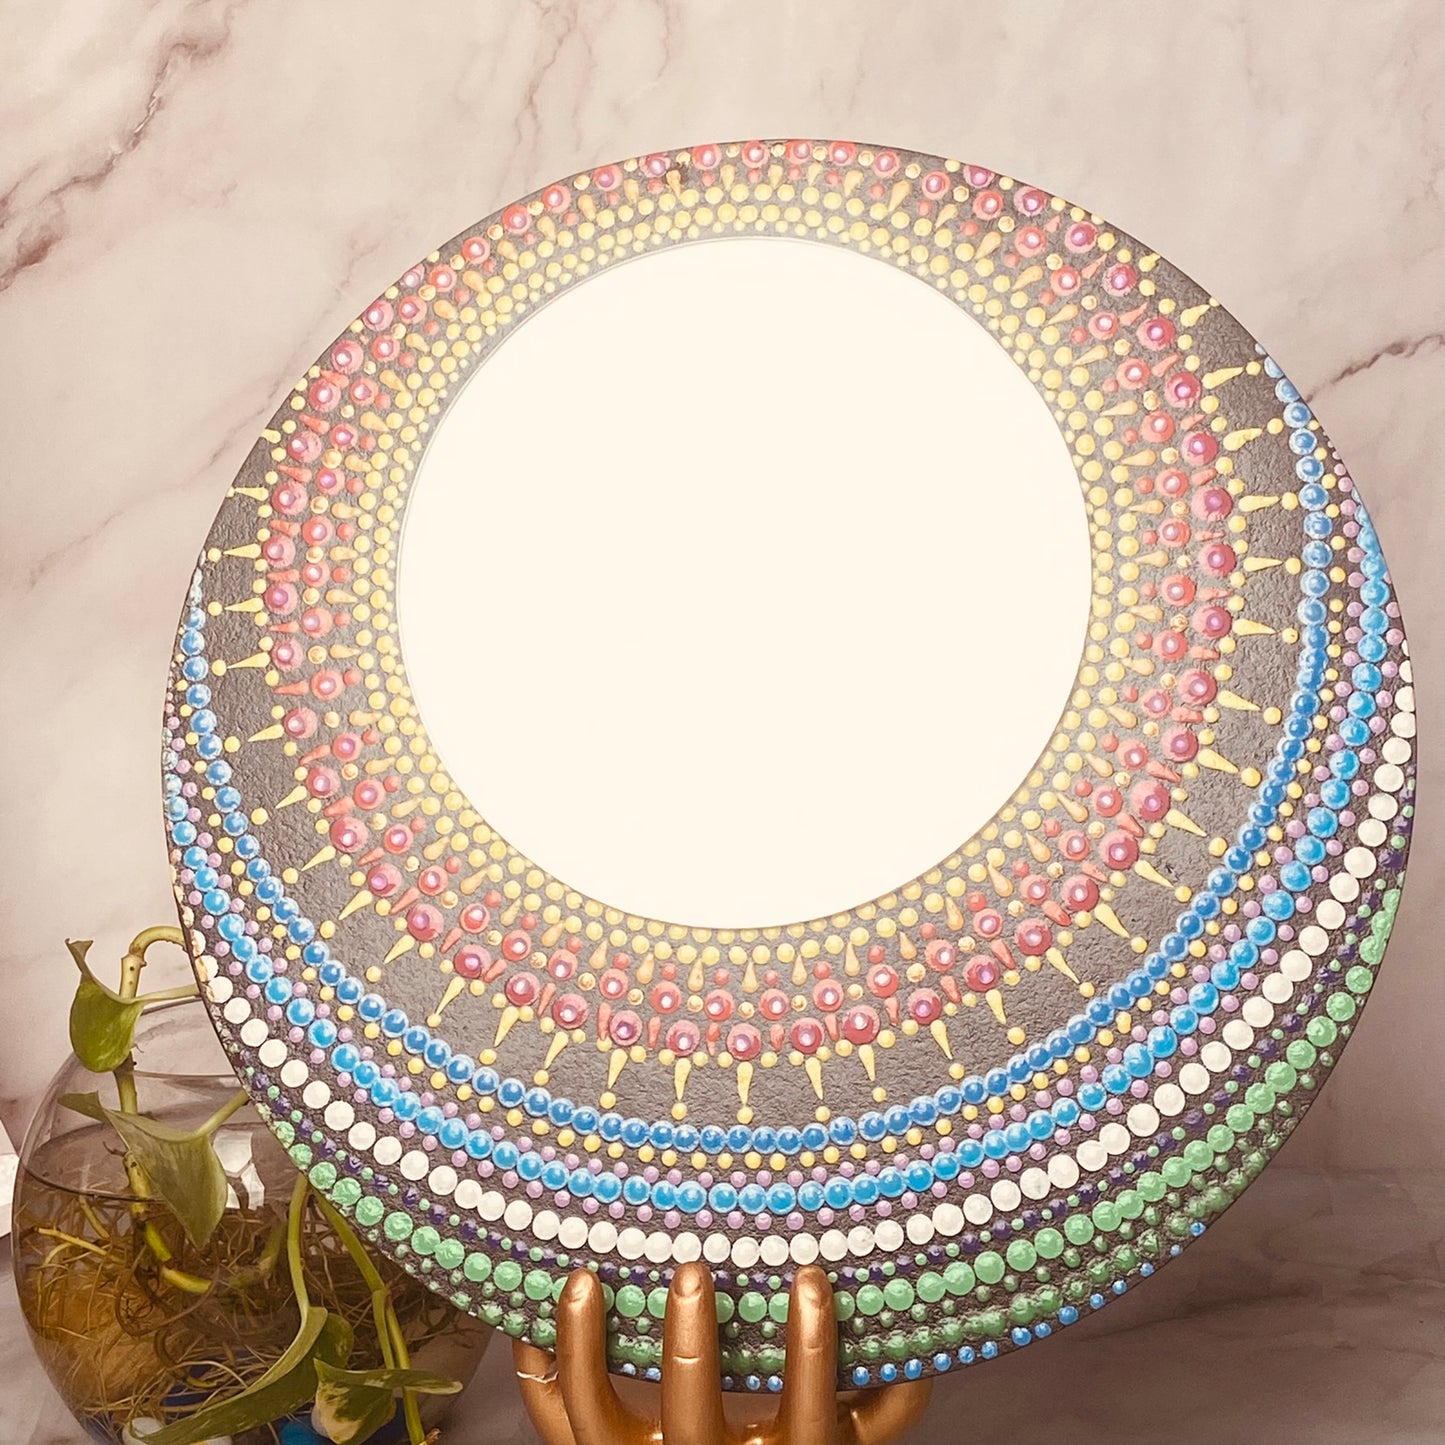 Harmony in Reflection: Mandala Mirror Decor for Inspired Living - Nuba Arts